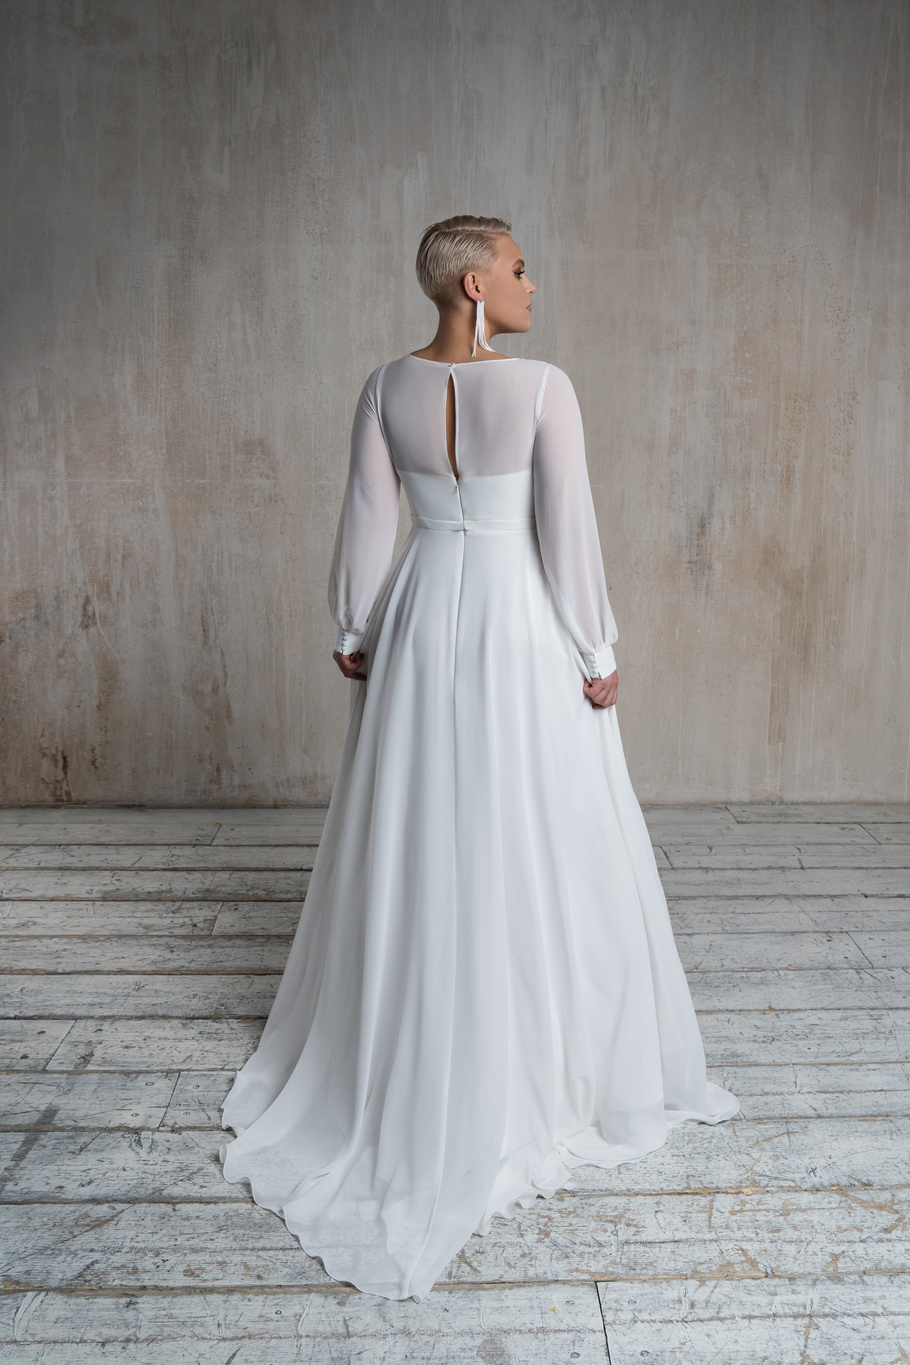 Свадебное платье «Осфадэль плюс сайз» Марта — купить в Самаре платье Осфадэль из коллекции 2021 года